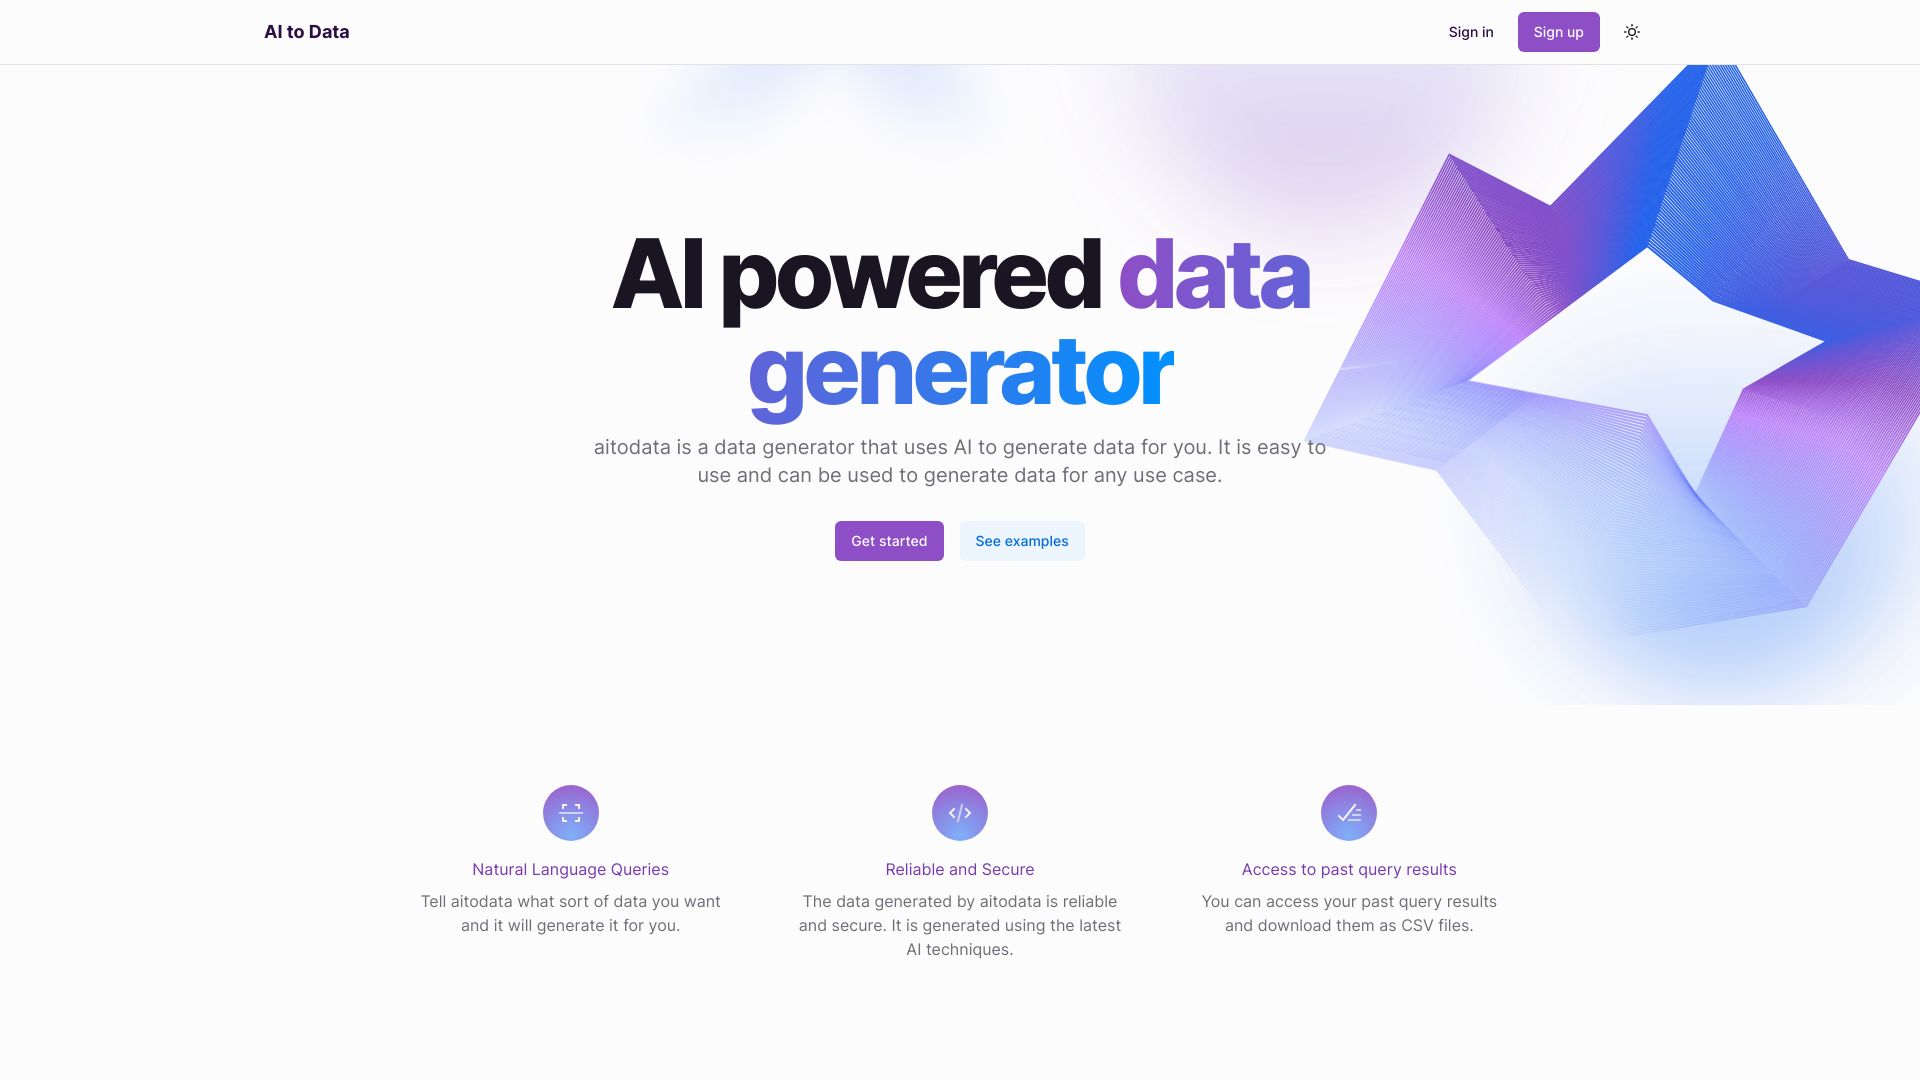 AI to Data icon